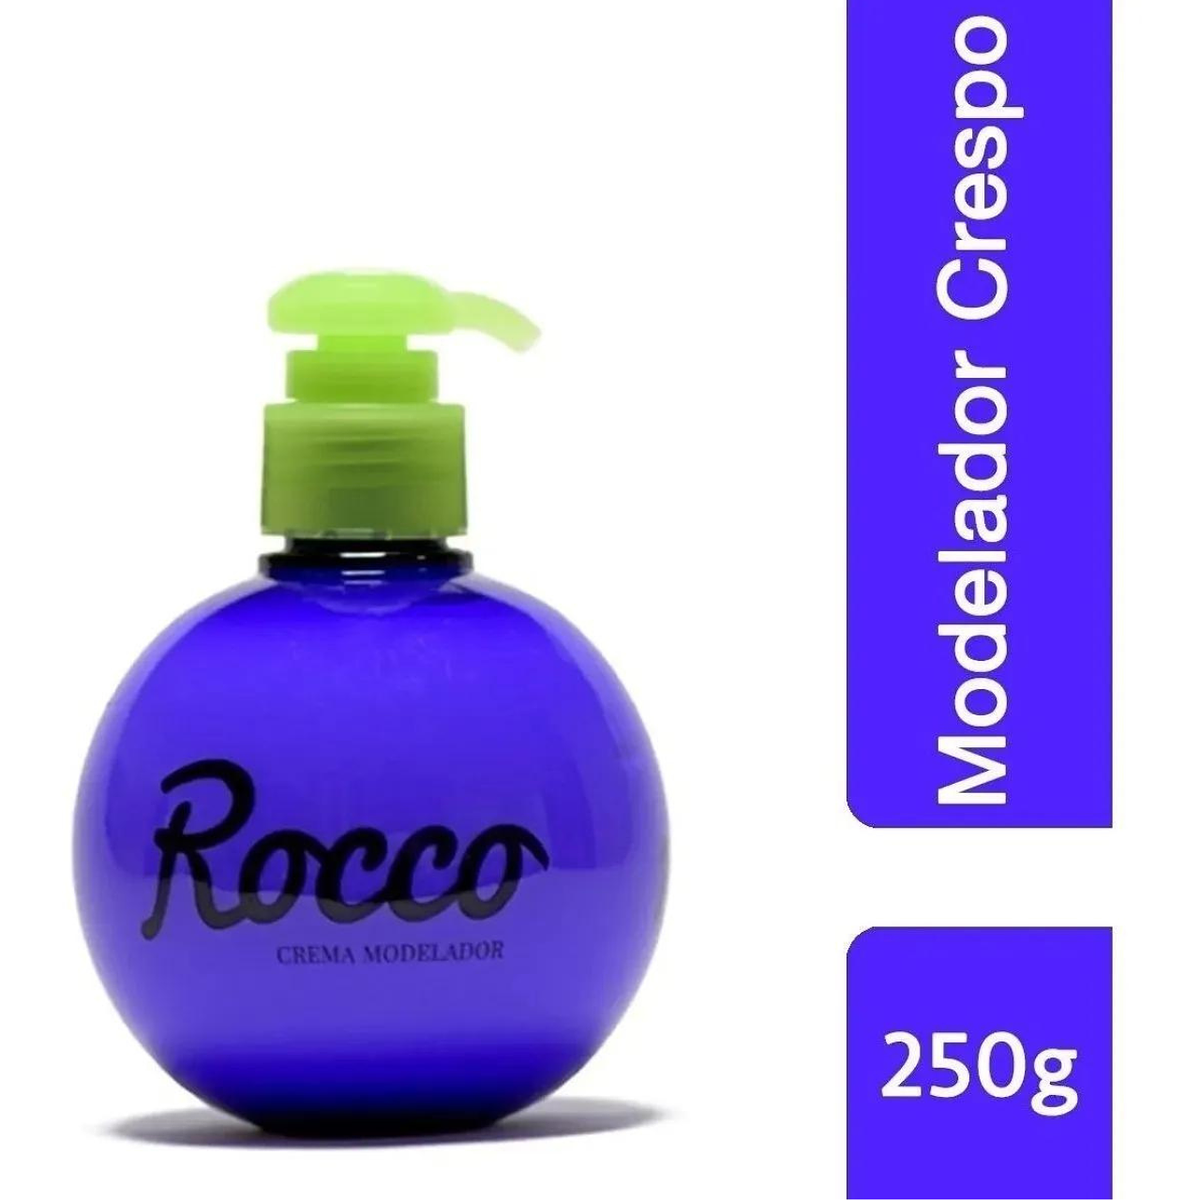 Crema Modeladora De Cabello Crespo Rocco 250 G